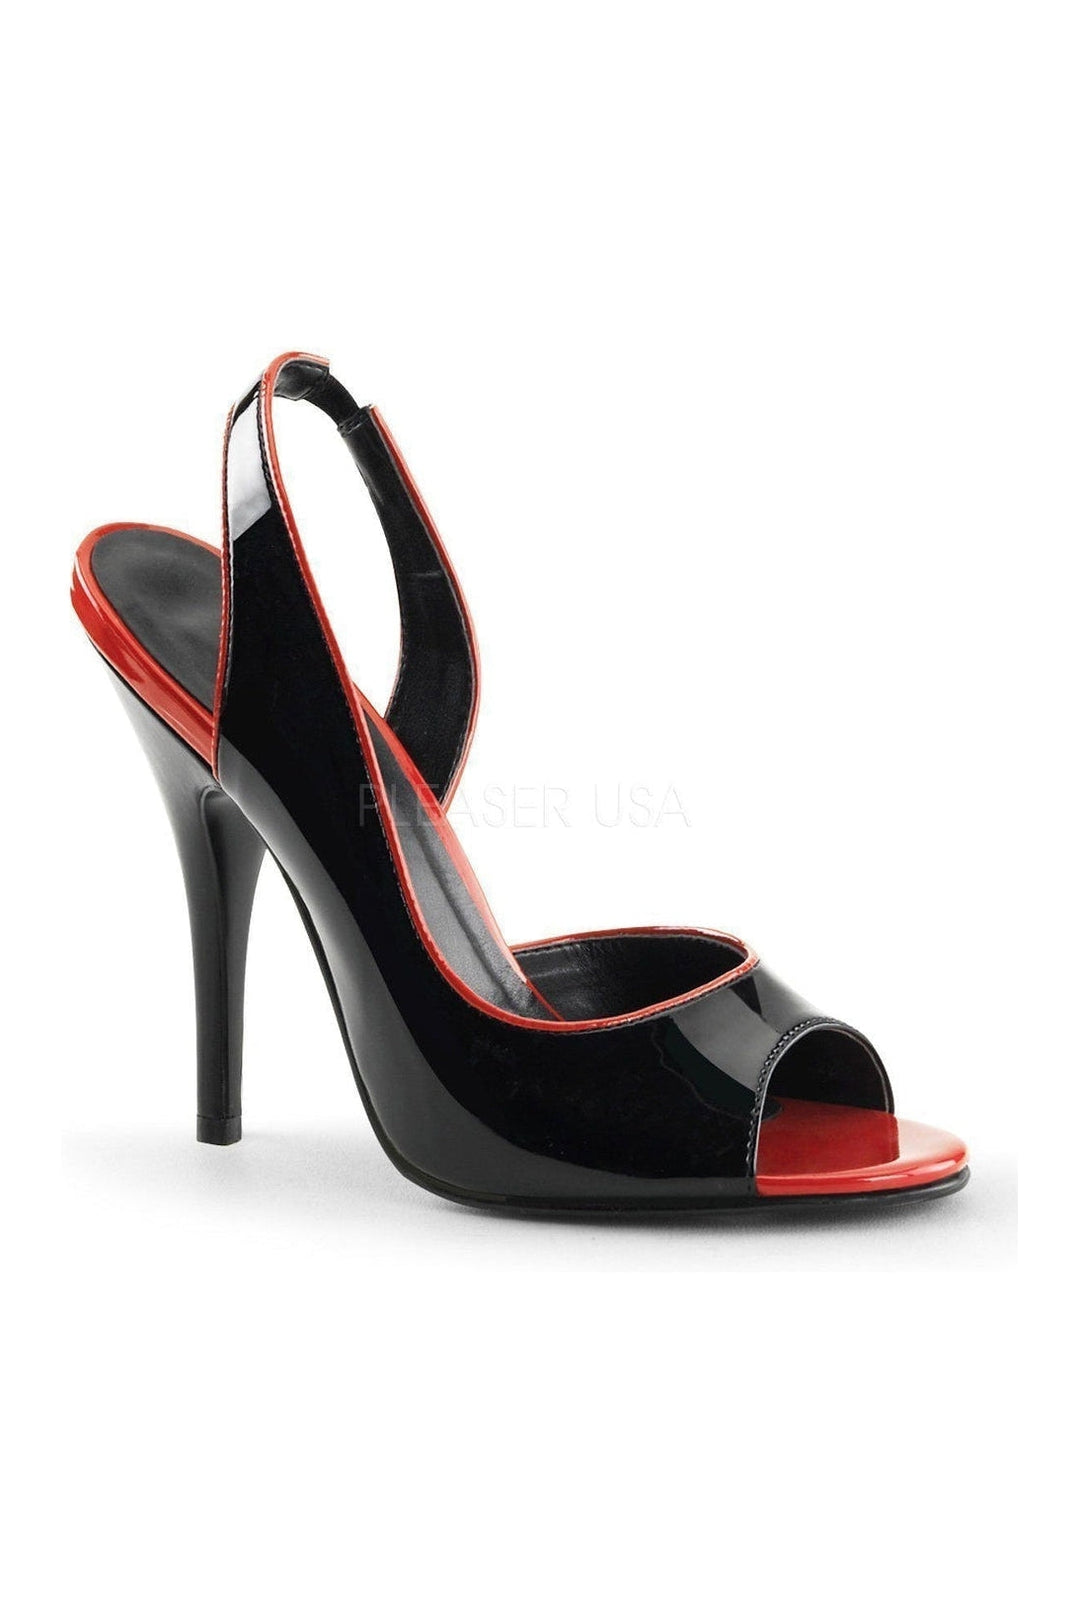 SEDUCE-117 Sandal | Black Patent-Pleaser-Black-Sandals-SEXYSHOES.COM